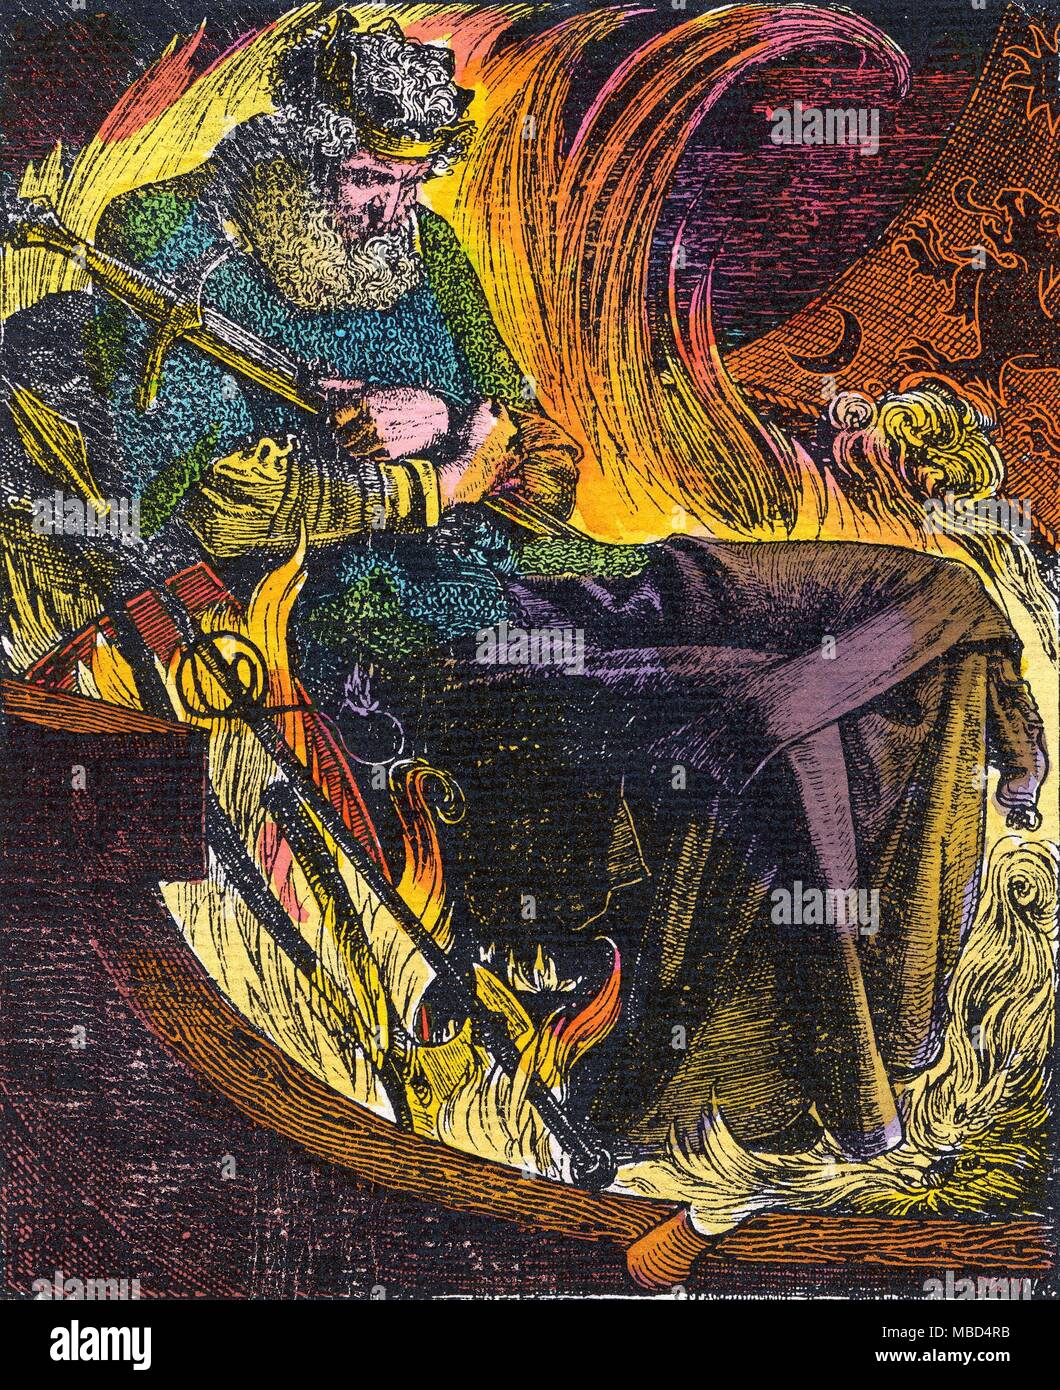 TEUTONIC - FEUER BESTATTUNG AUF SEE - die Beerdigung von König WARWOLF Warwolf in einem Feuer-Schiff. Holz - Gravur von Frederick Sandys, 1884. Stockfoto